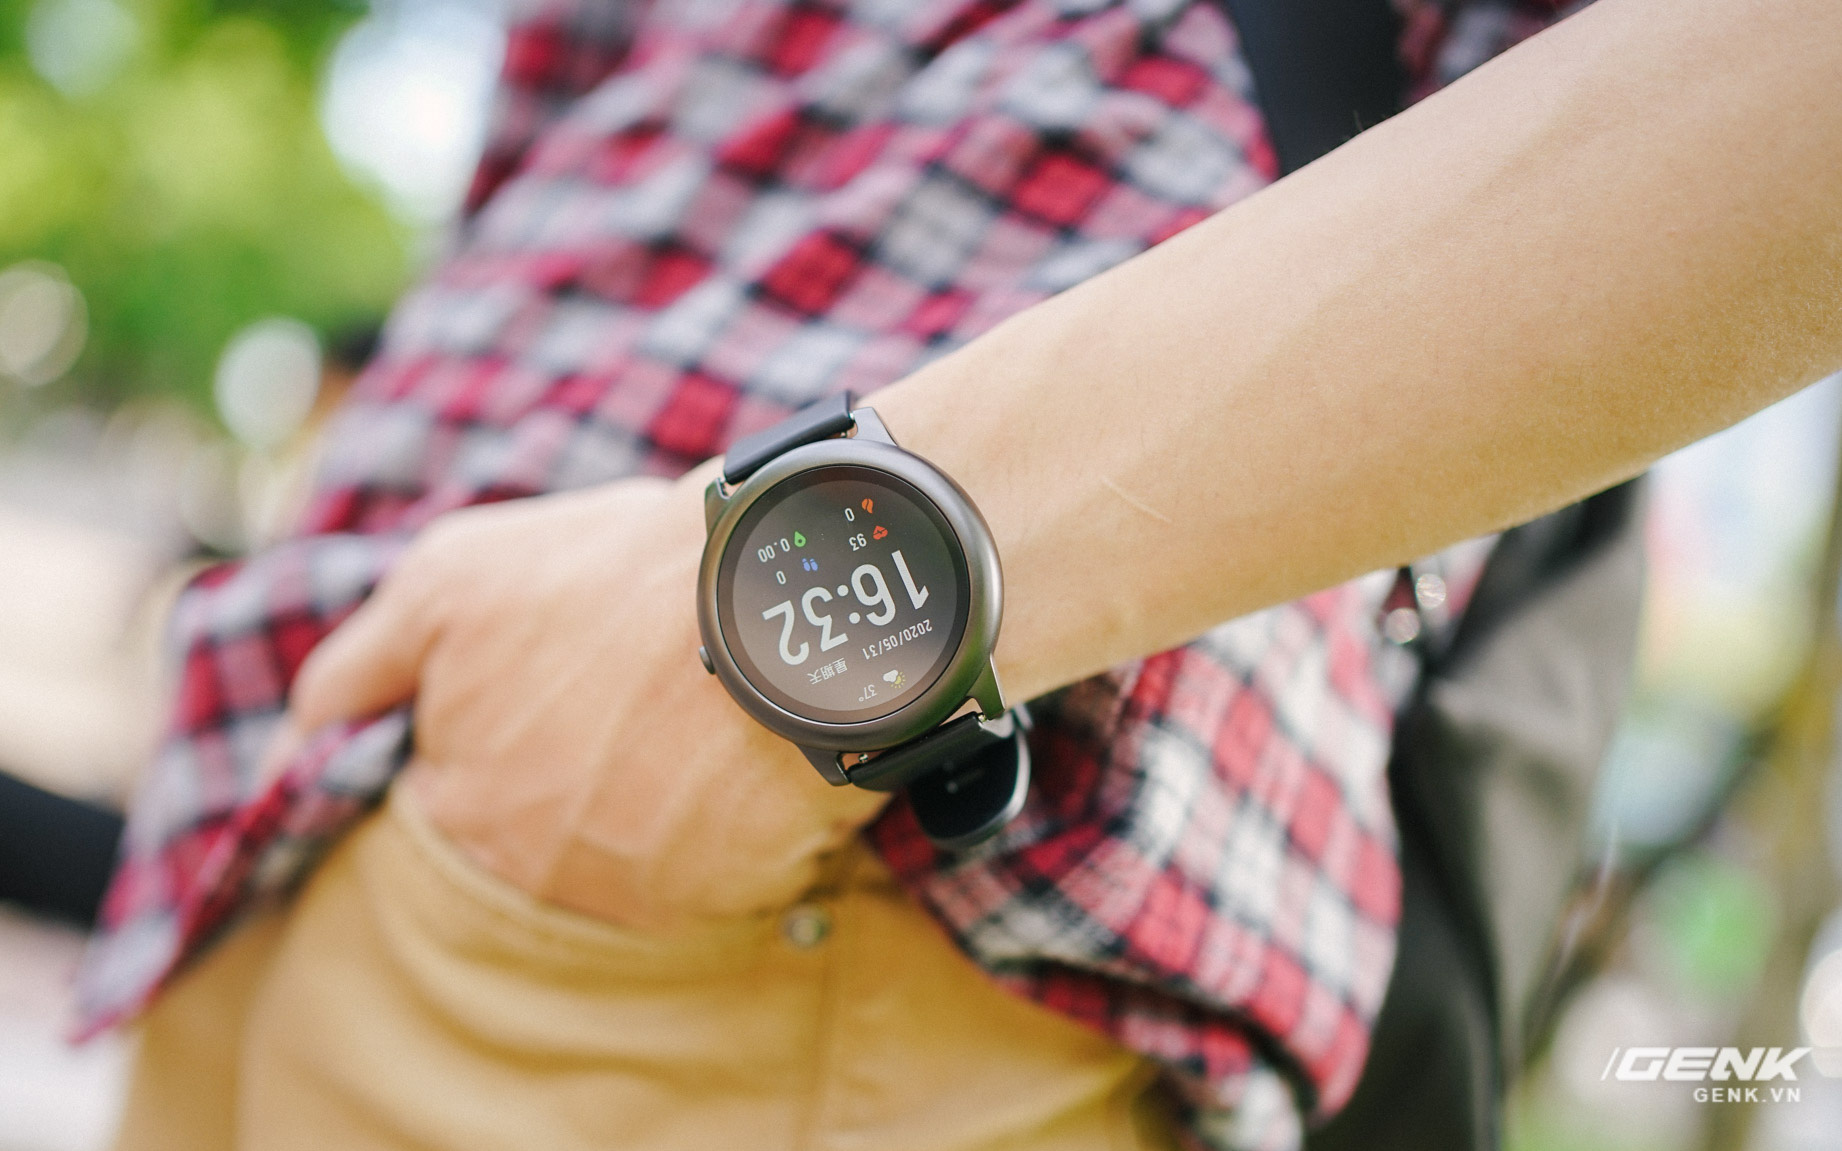 Trên tay smartwatch Haylou Solar: Thiết kế ổn, pin 30 ngày, chống nước IP68, giá 700.000 đồng